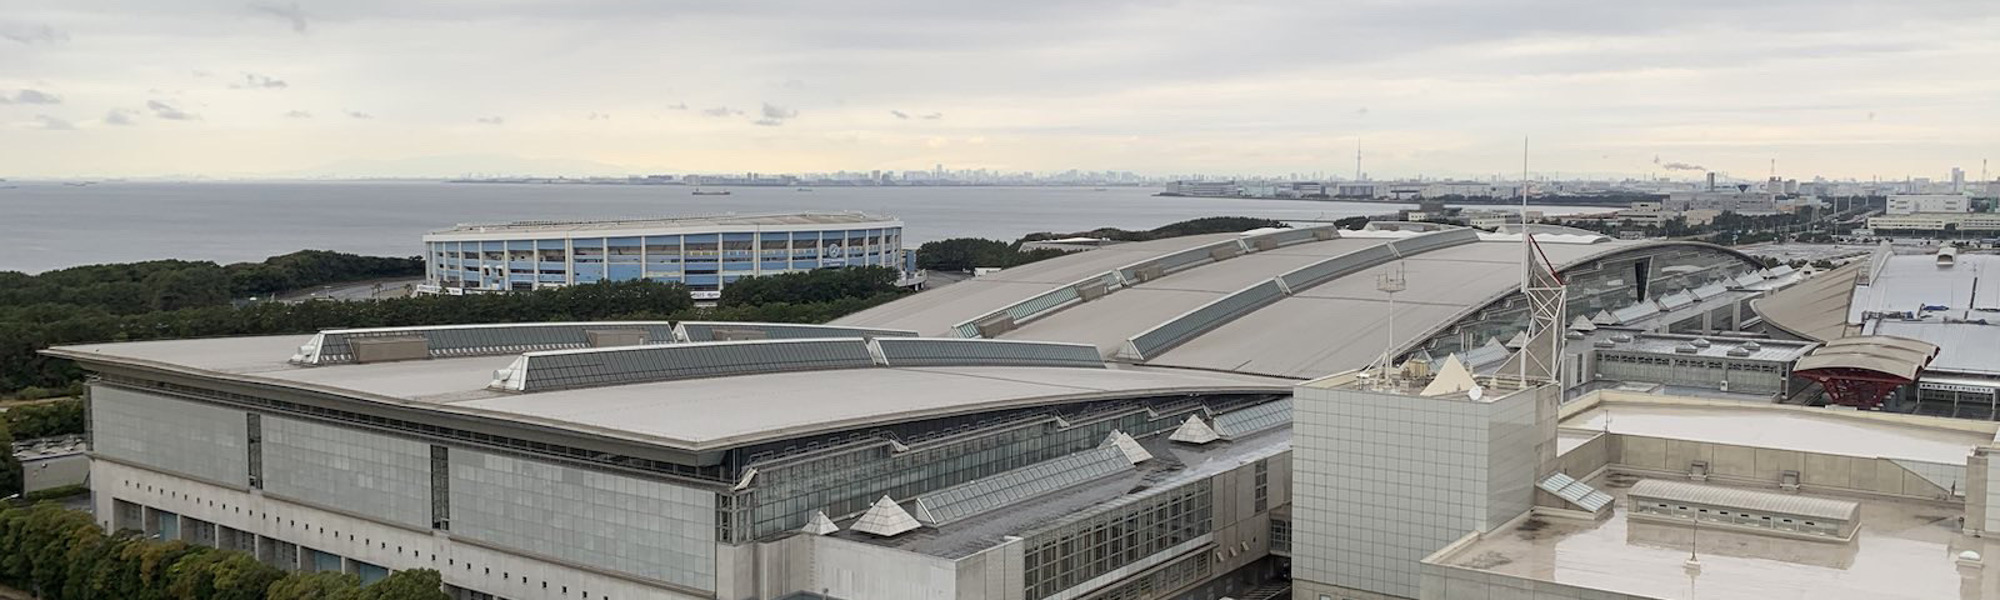 Japan Convention Centre